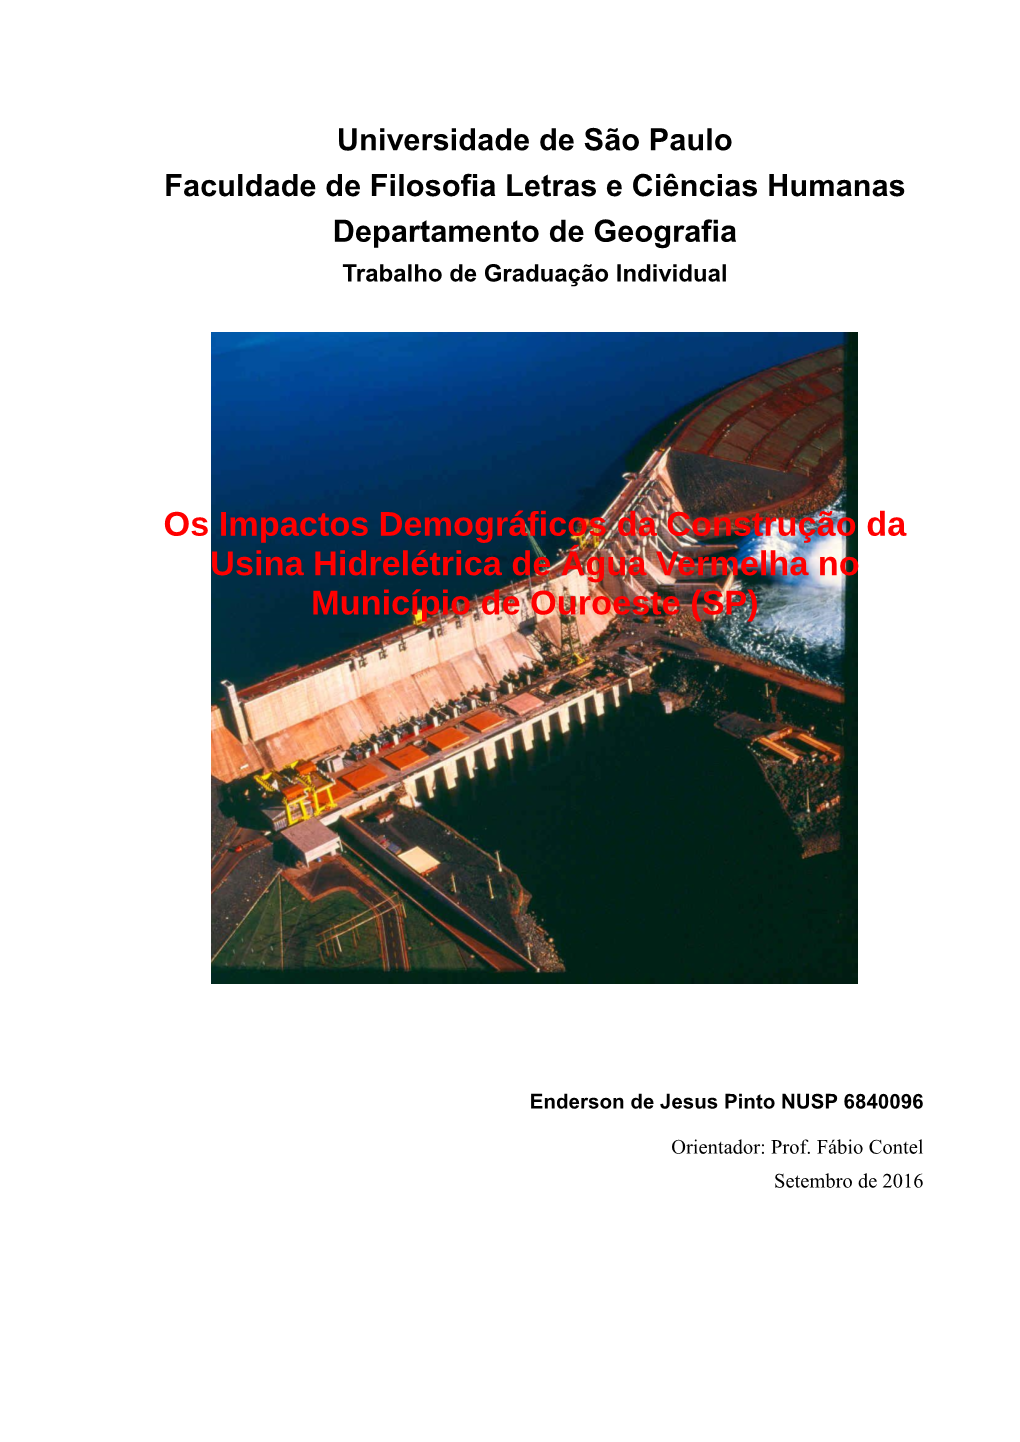 Os Impactos Demográficos Da Construção Da Usina Hidrelétrica De Água Vermelha No Município De Ouroeste (SP)